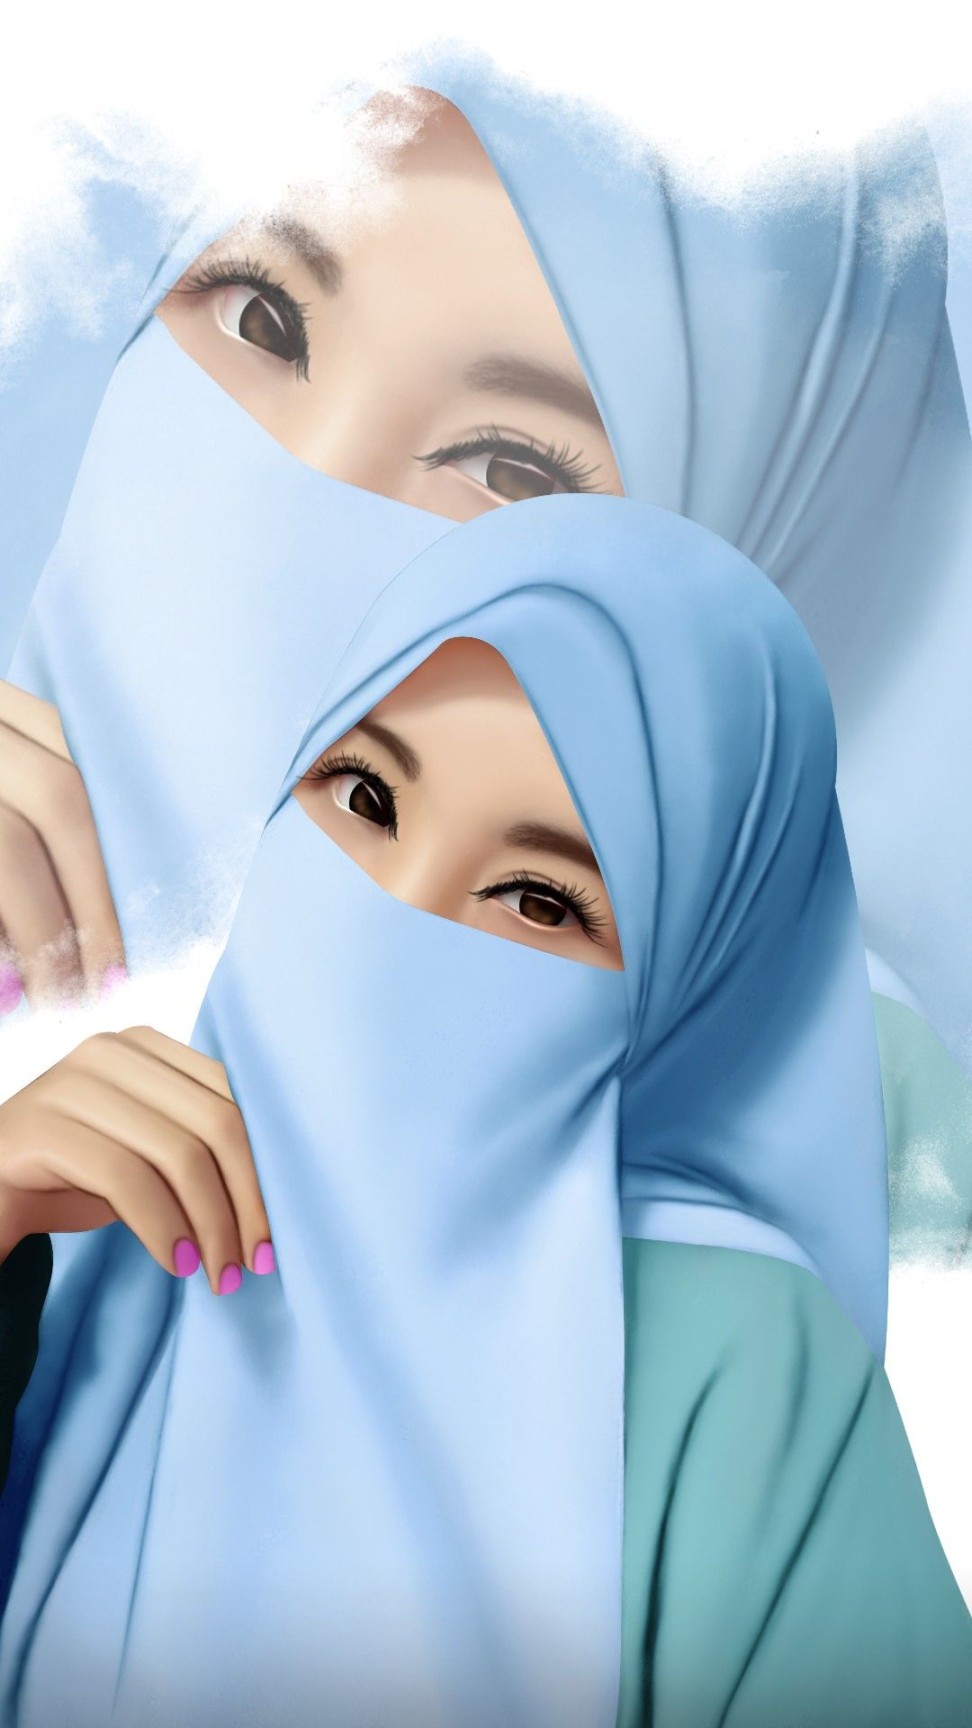 Gambar Kartun Muslimah, Cantik, Imut, dan lucu  Beautiful hijab